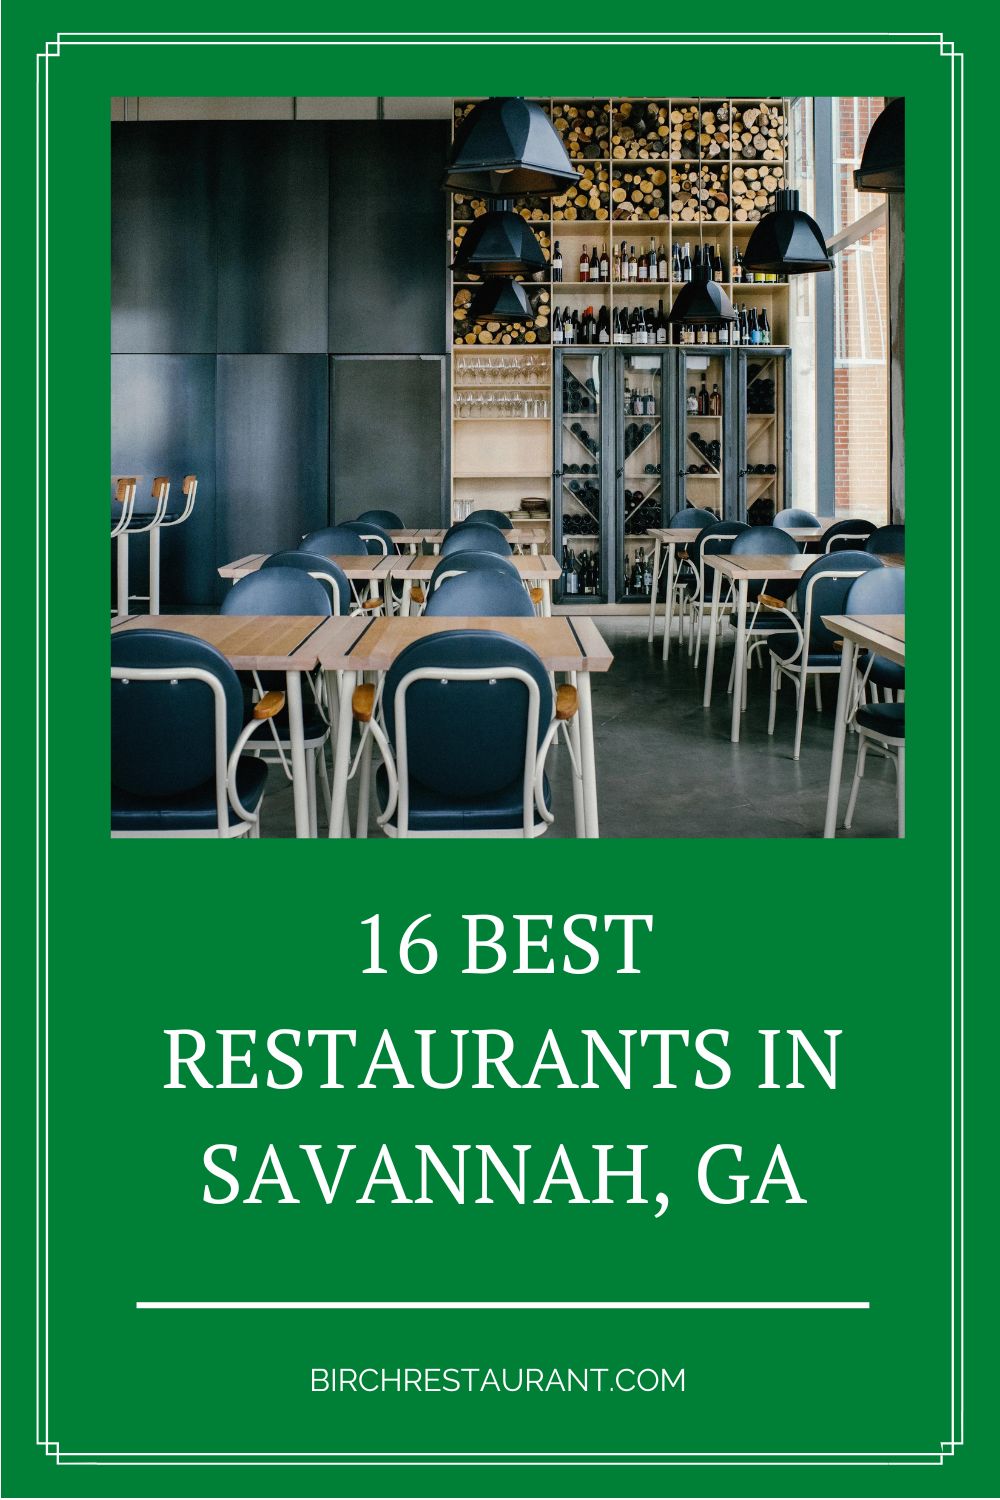 Best Restaurants in Savannah